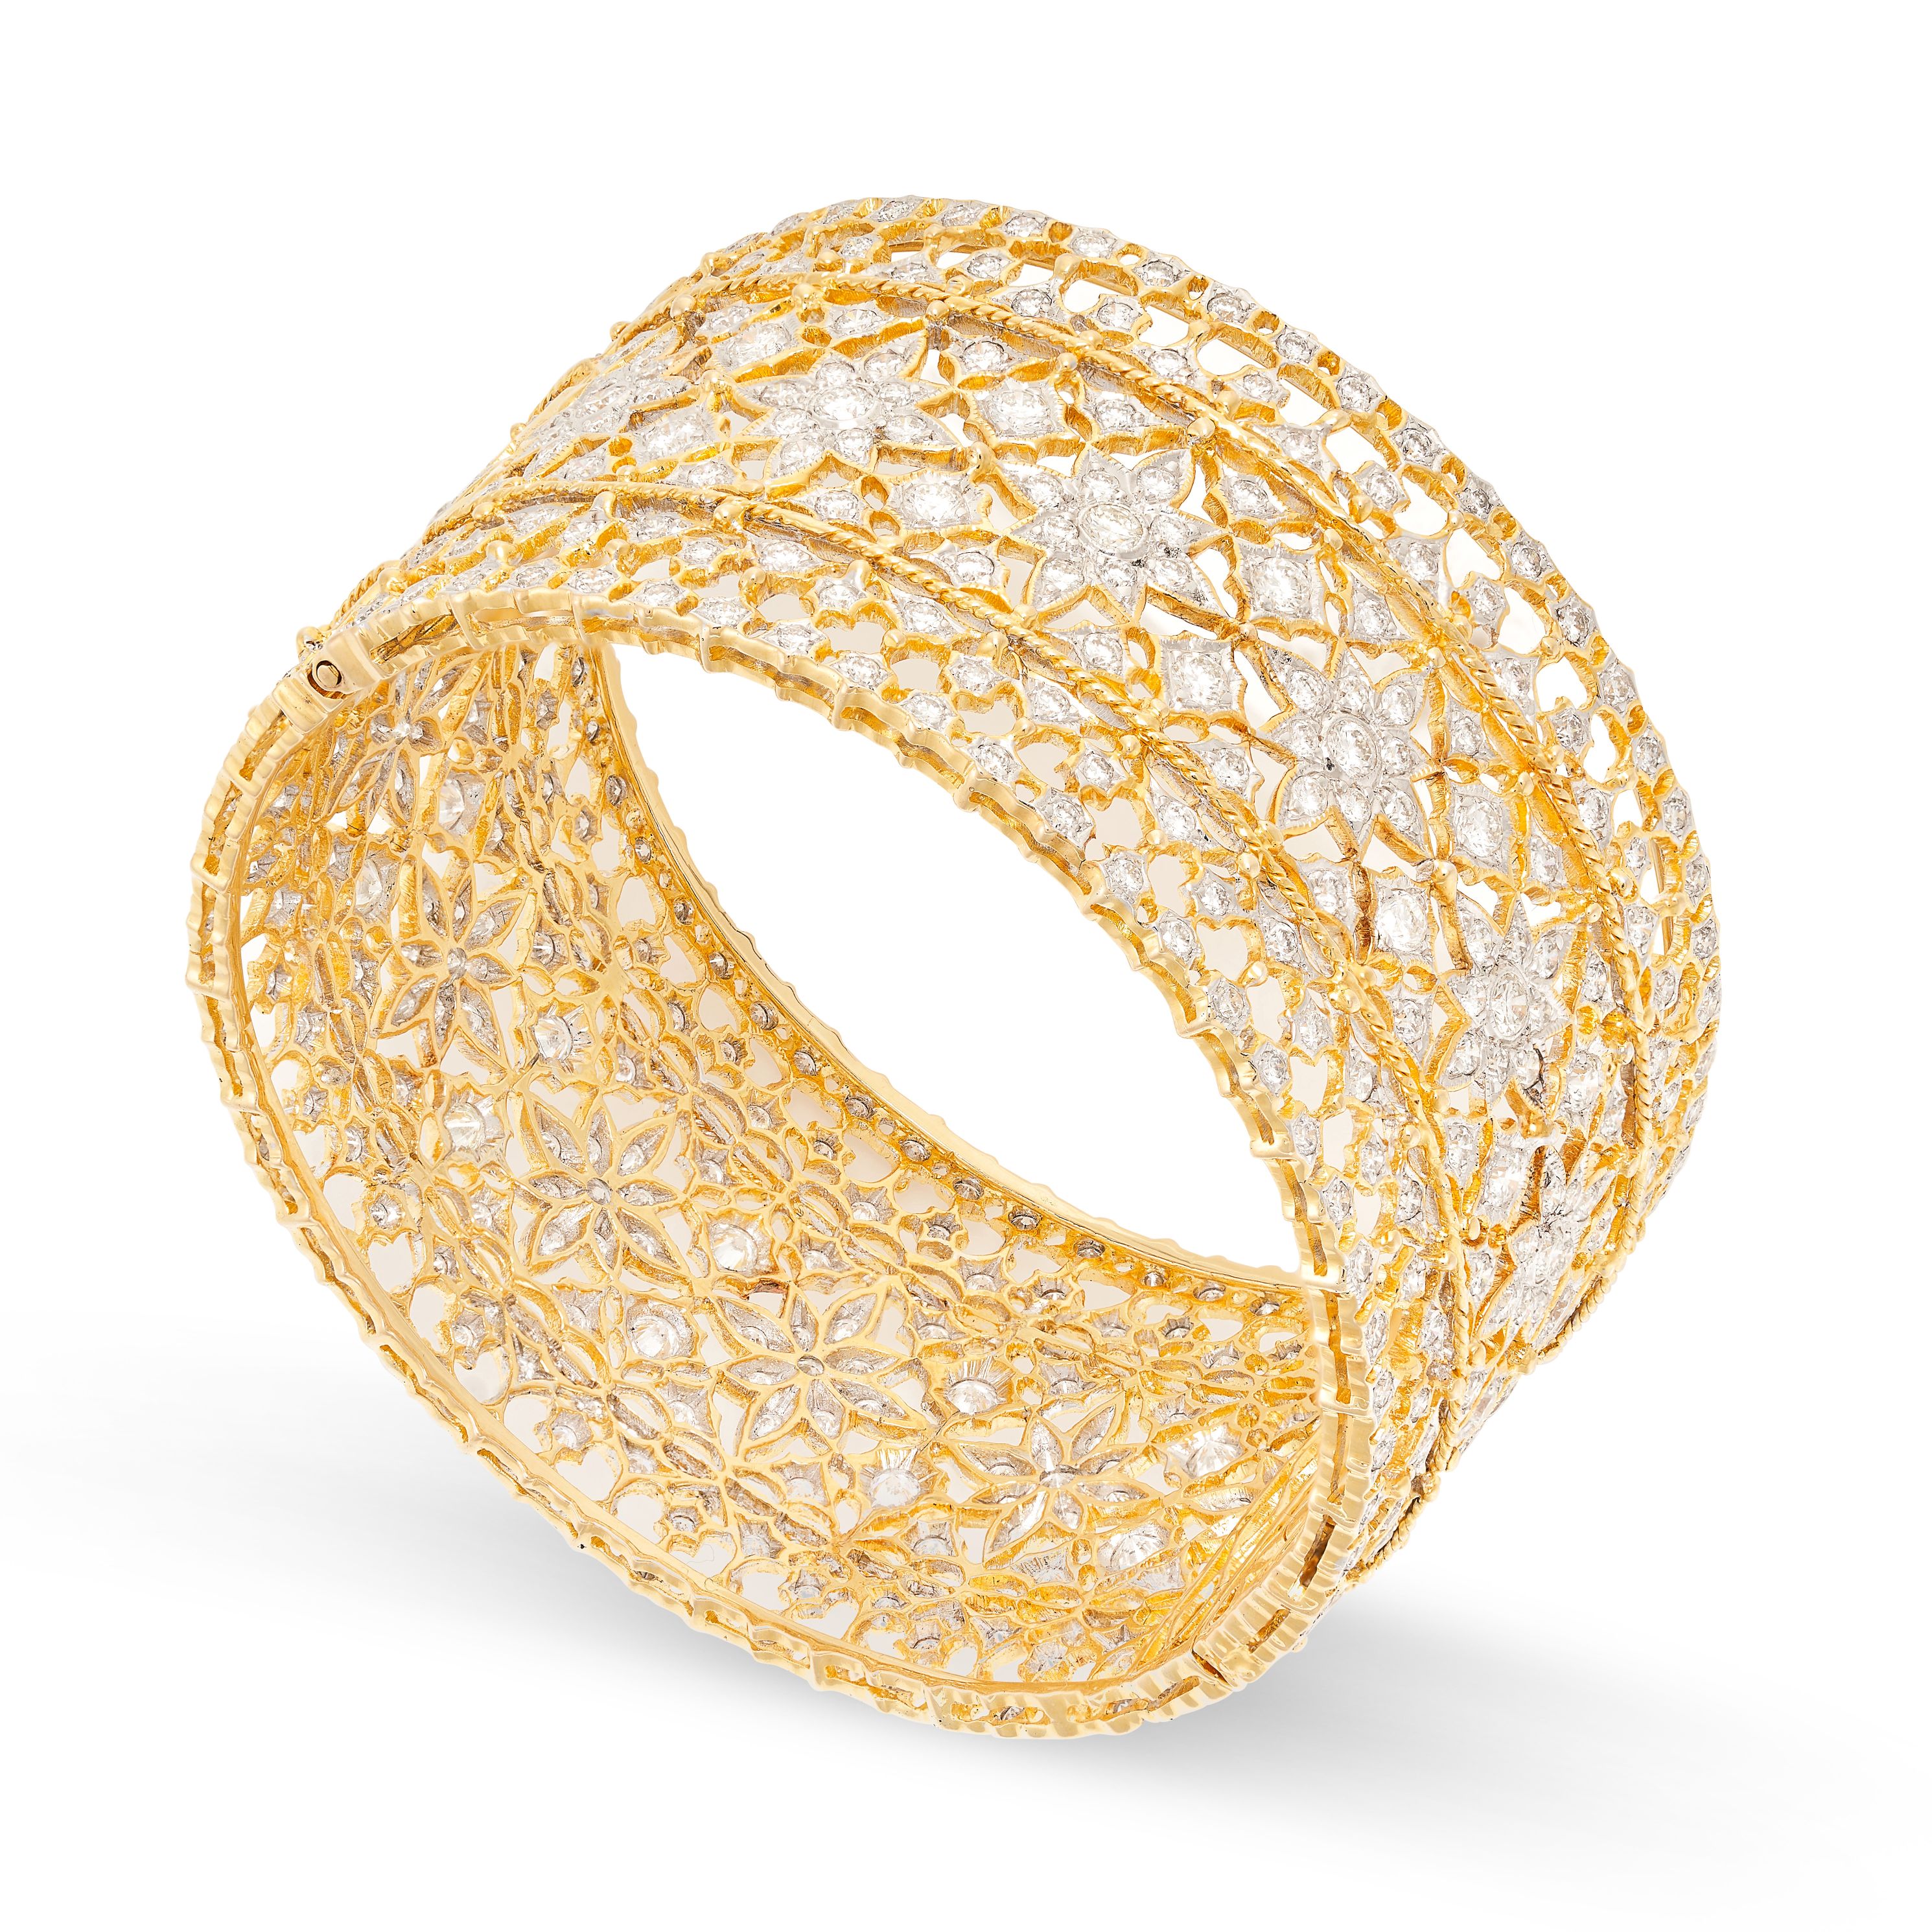 A DIAMOND BANGLE in yellow gold, in foliate design, set with round brilliant cut diamonds all